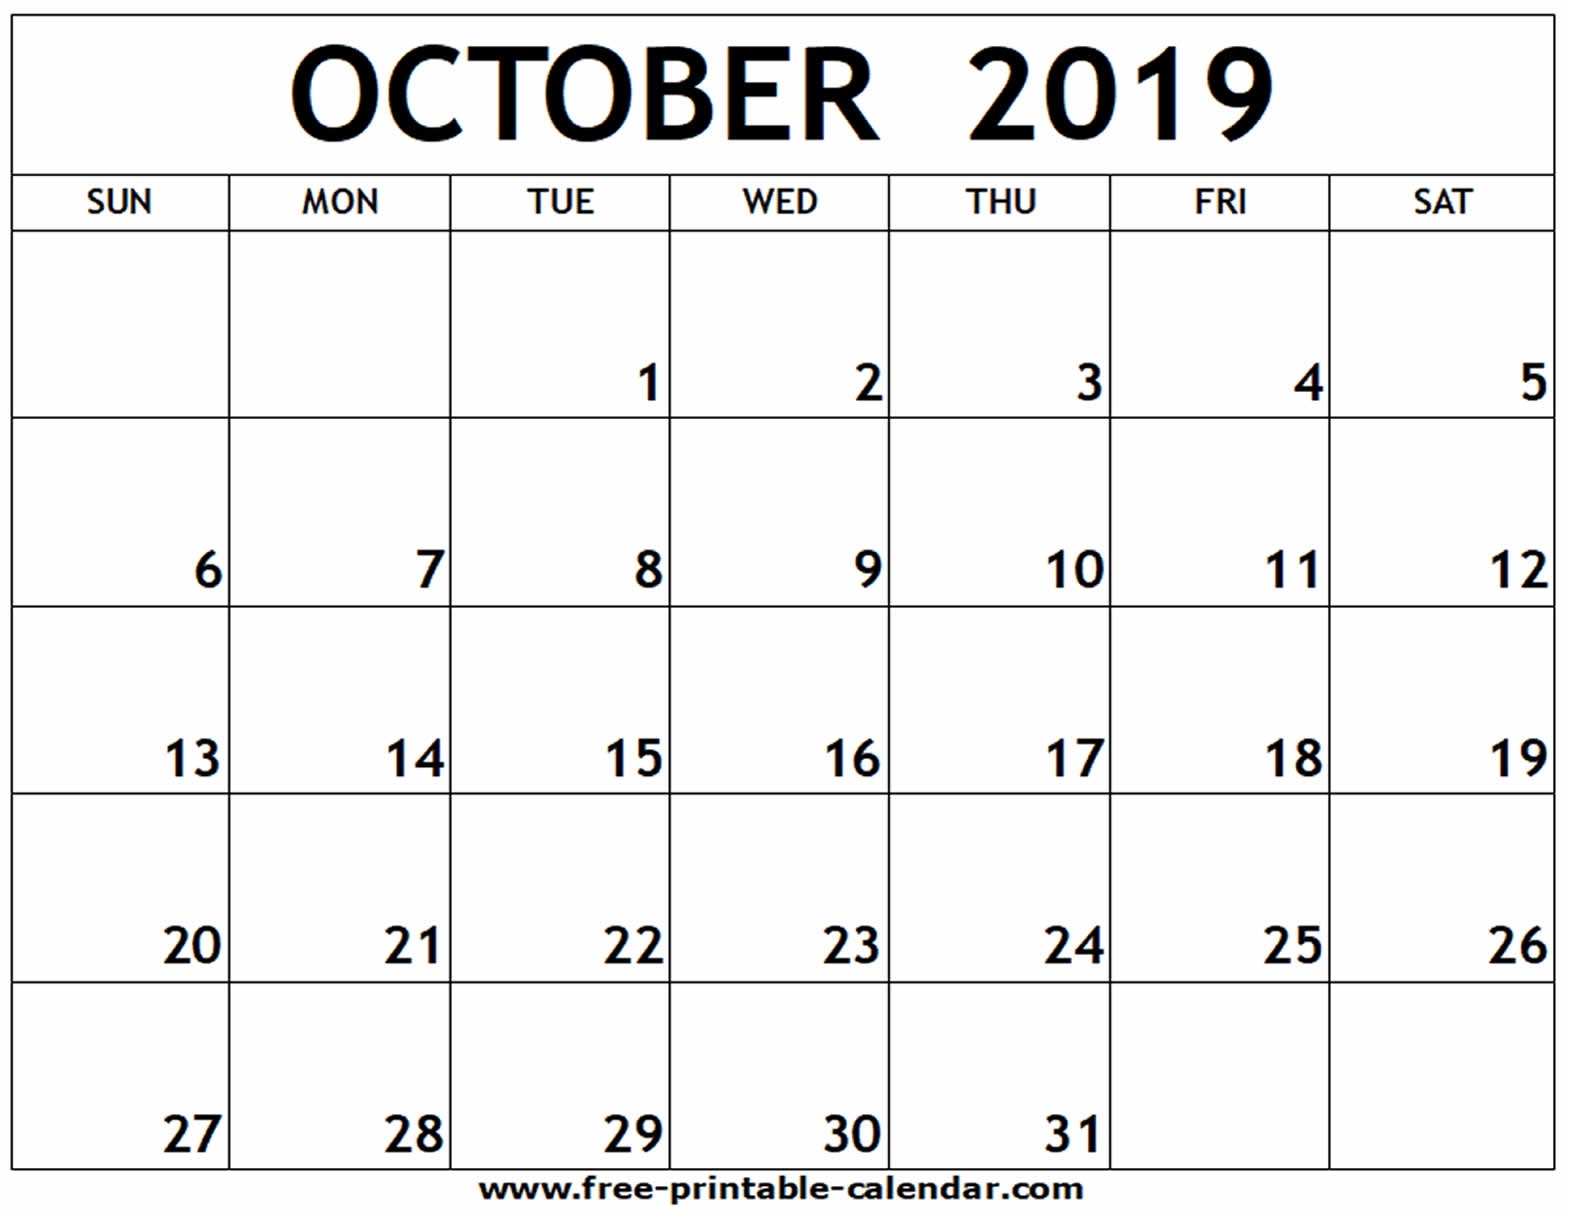 October 2019 Printable Calendar - Free-Printable-Calendar